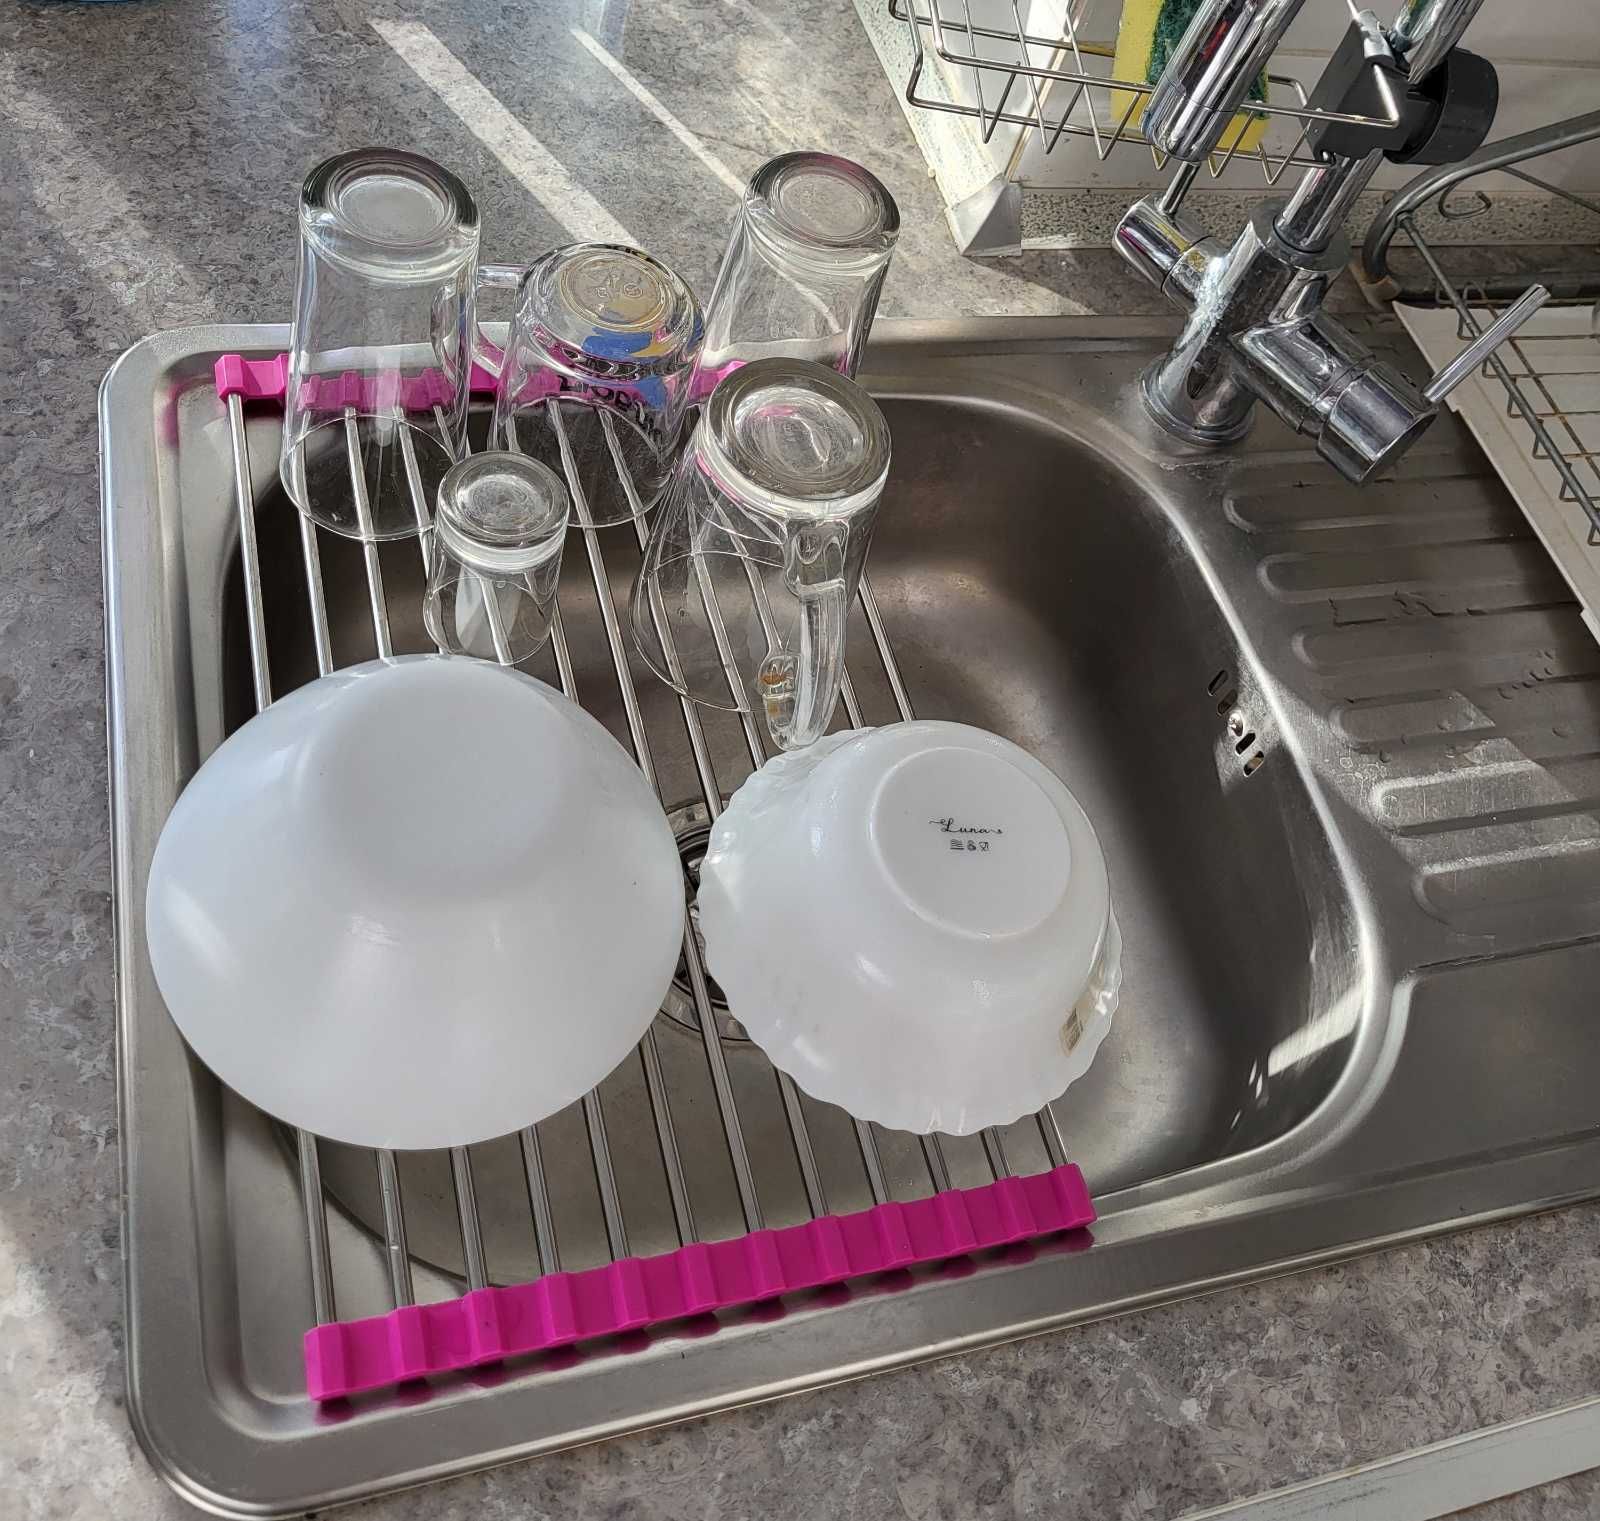 Решетка сушилка для посуды на мойку подставка горячее Wash Basin Dryer